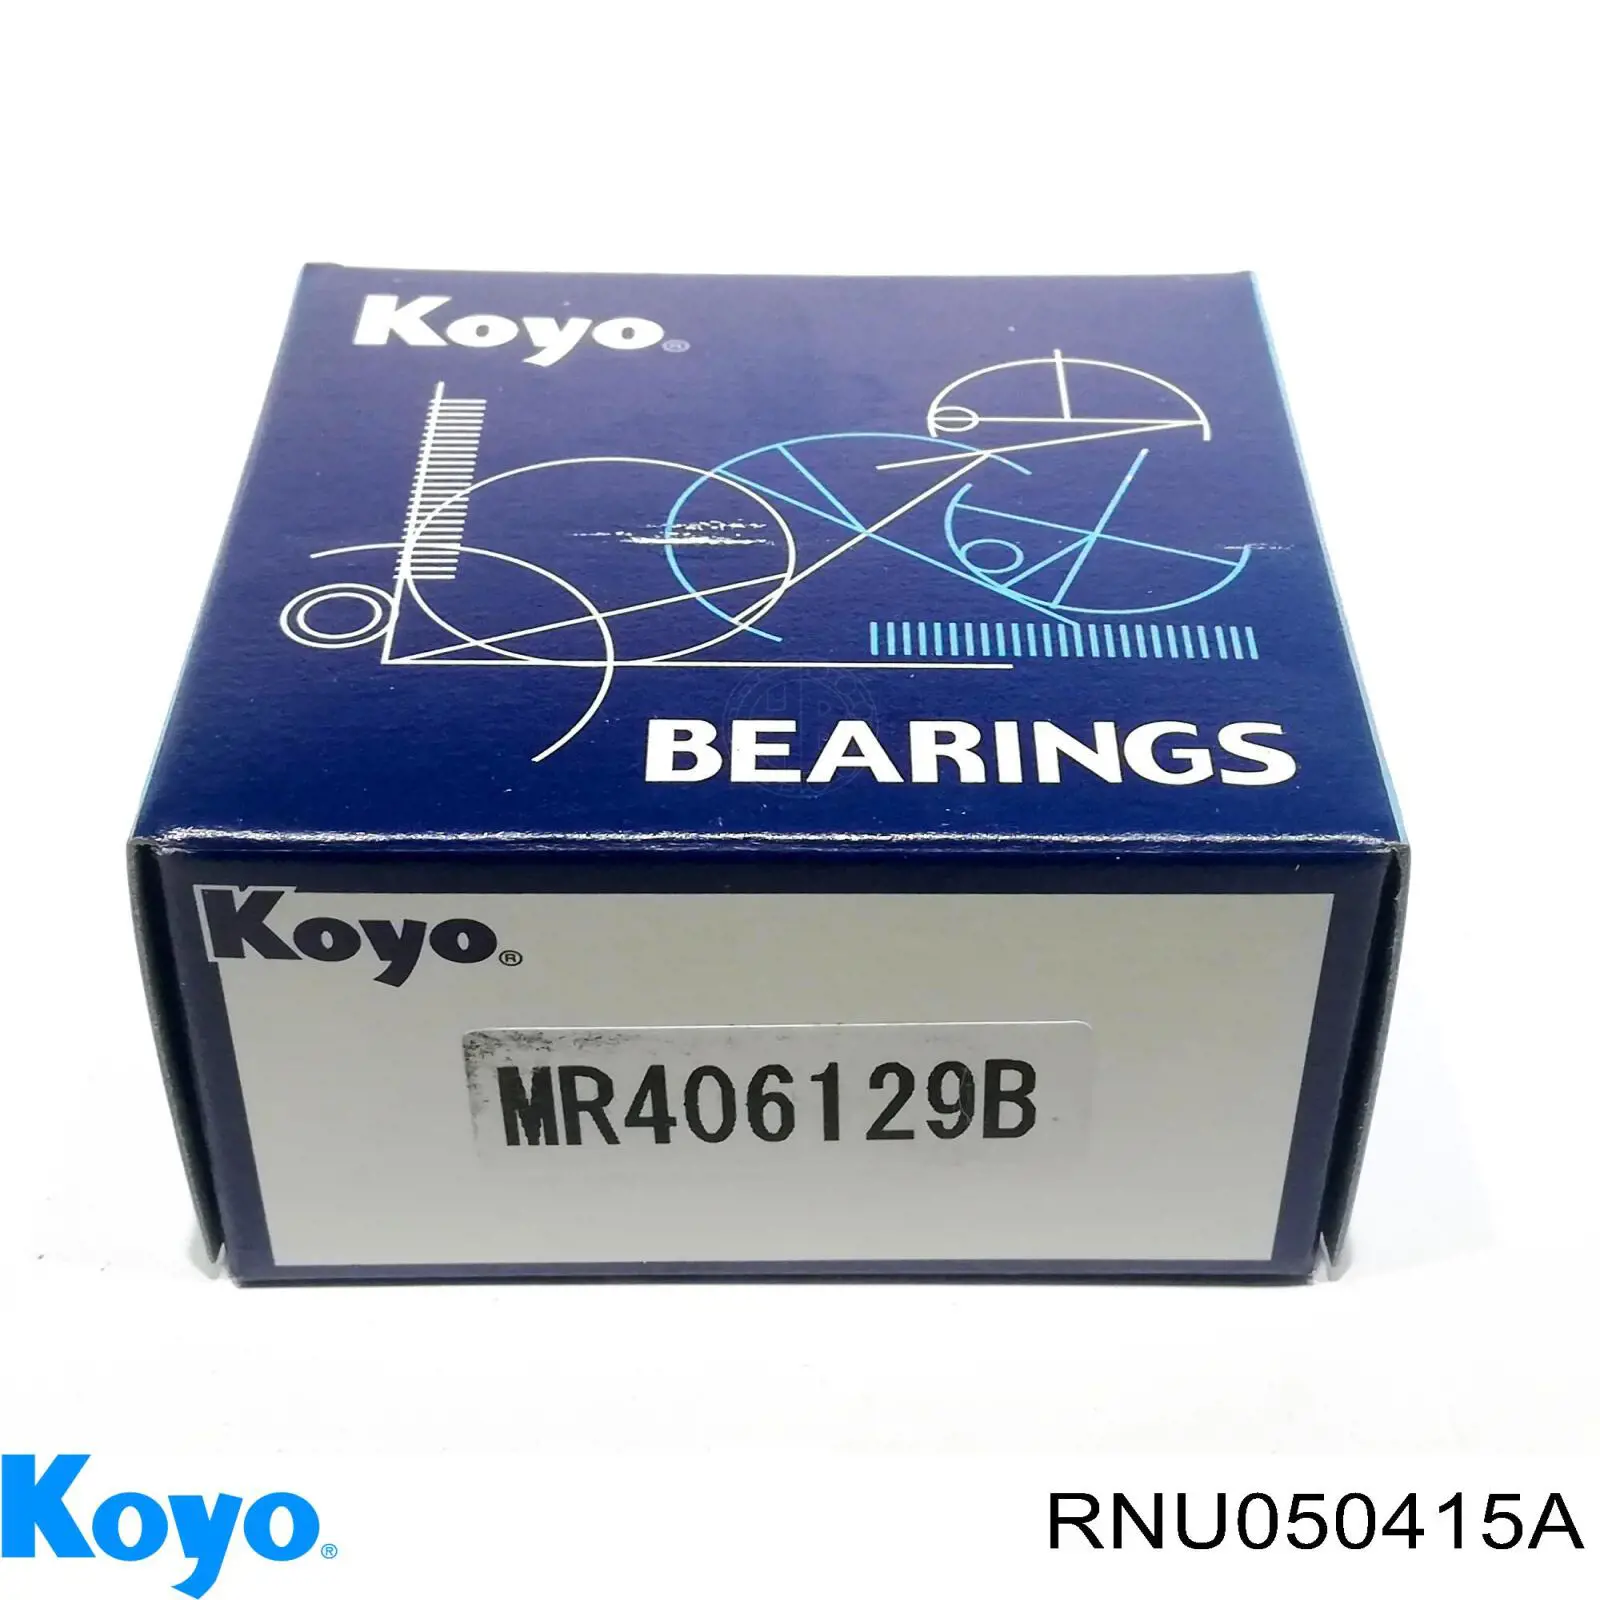 RNU050415A Koyo опорний підшипник первинного валу кпп (центрирующий підшипник маховика)